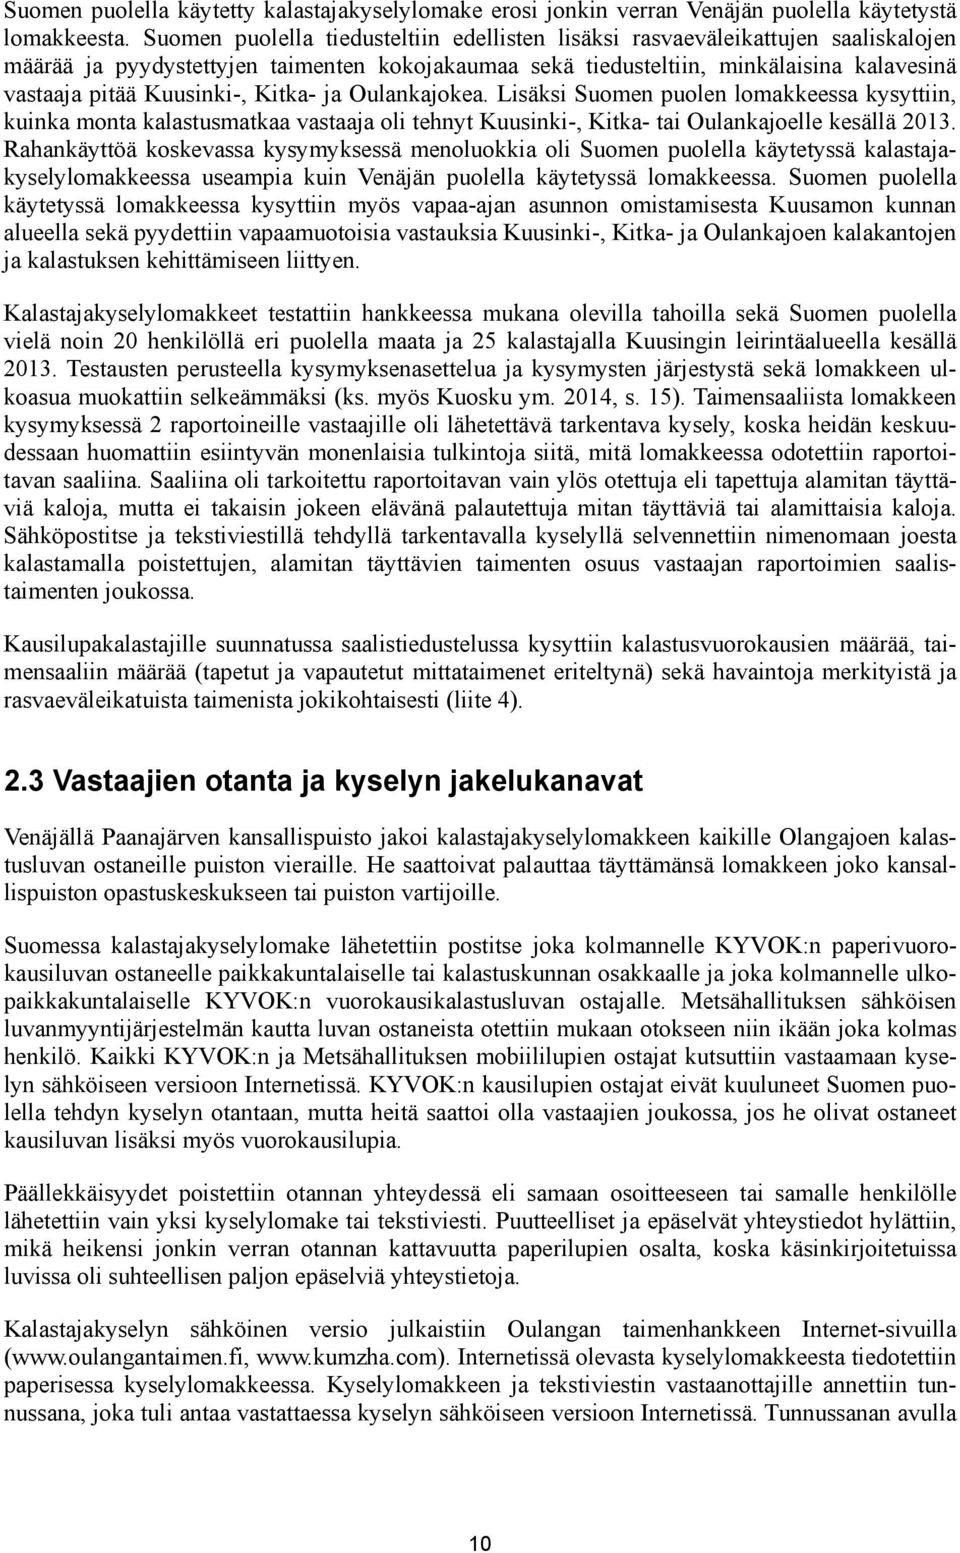 Kuusinki-, Kitka- ja Oulankajokea. Lisäksi Suomen puolen lomakkeessa kysyttiin, kuinka monta kalastusmatkaa vastaaja oli tehnyt Kuusinki-, Kitka- tai Oulankajoelle kesällä 2013.